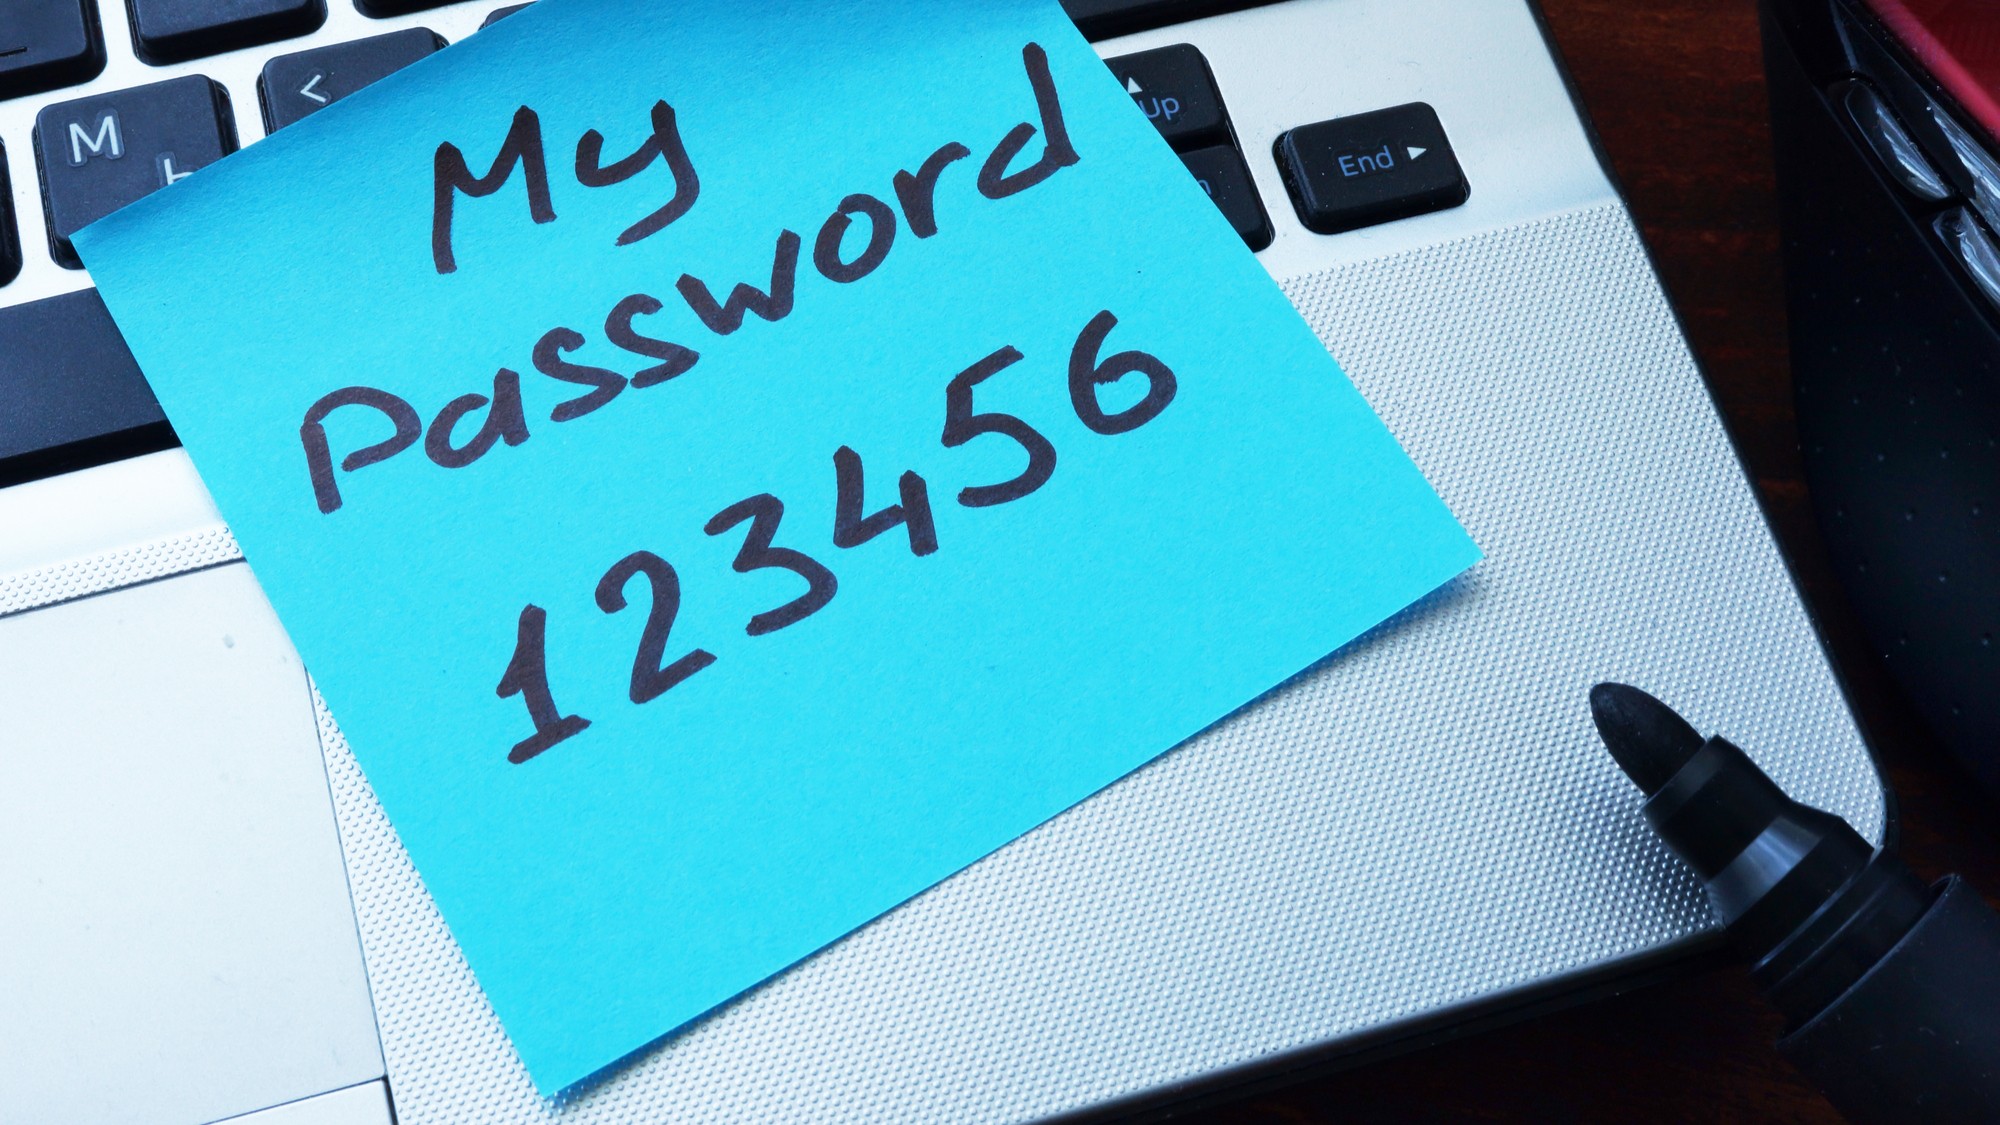 Британские исследователи представили список самых часто взламываемых паролей